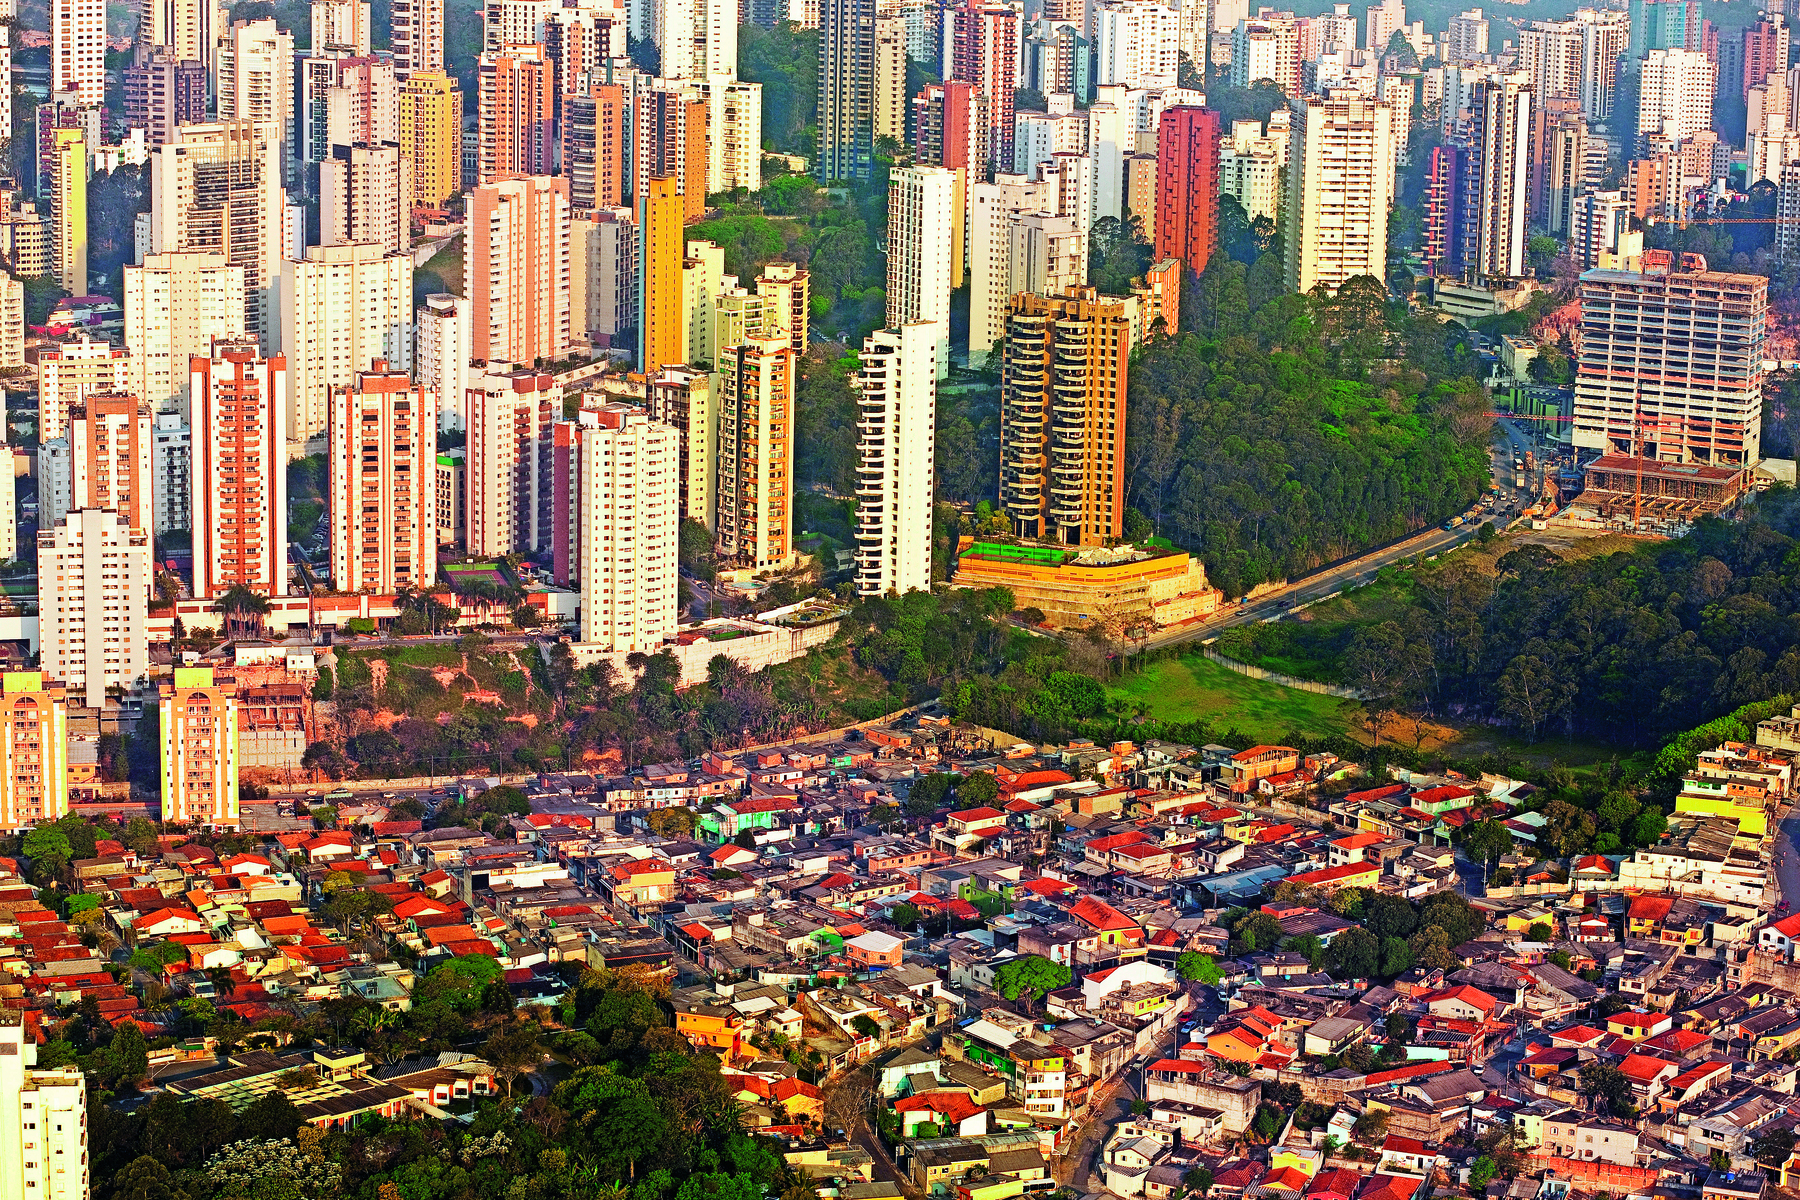 Fotografia. Vista aérea de uma cidade com dois agrupamentos de moradias distintas. Em primeiro plano há diversos casebres muito próximos. Ao fundo há diversos prédios grandiosos.